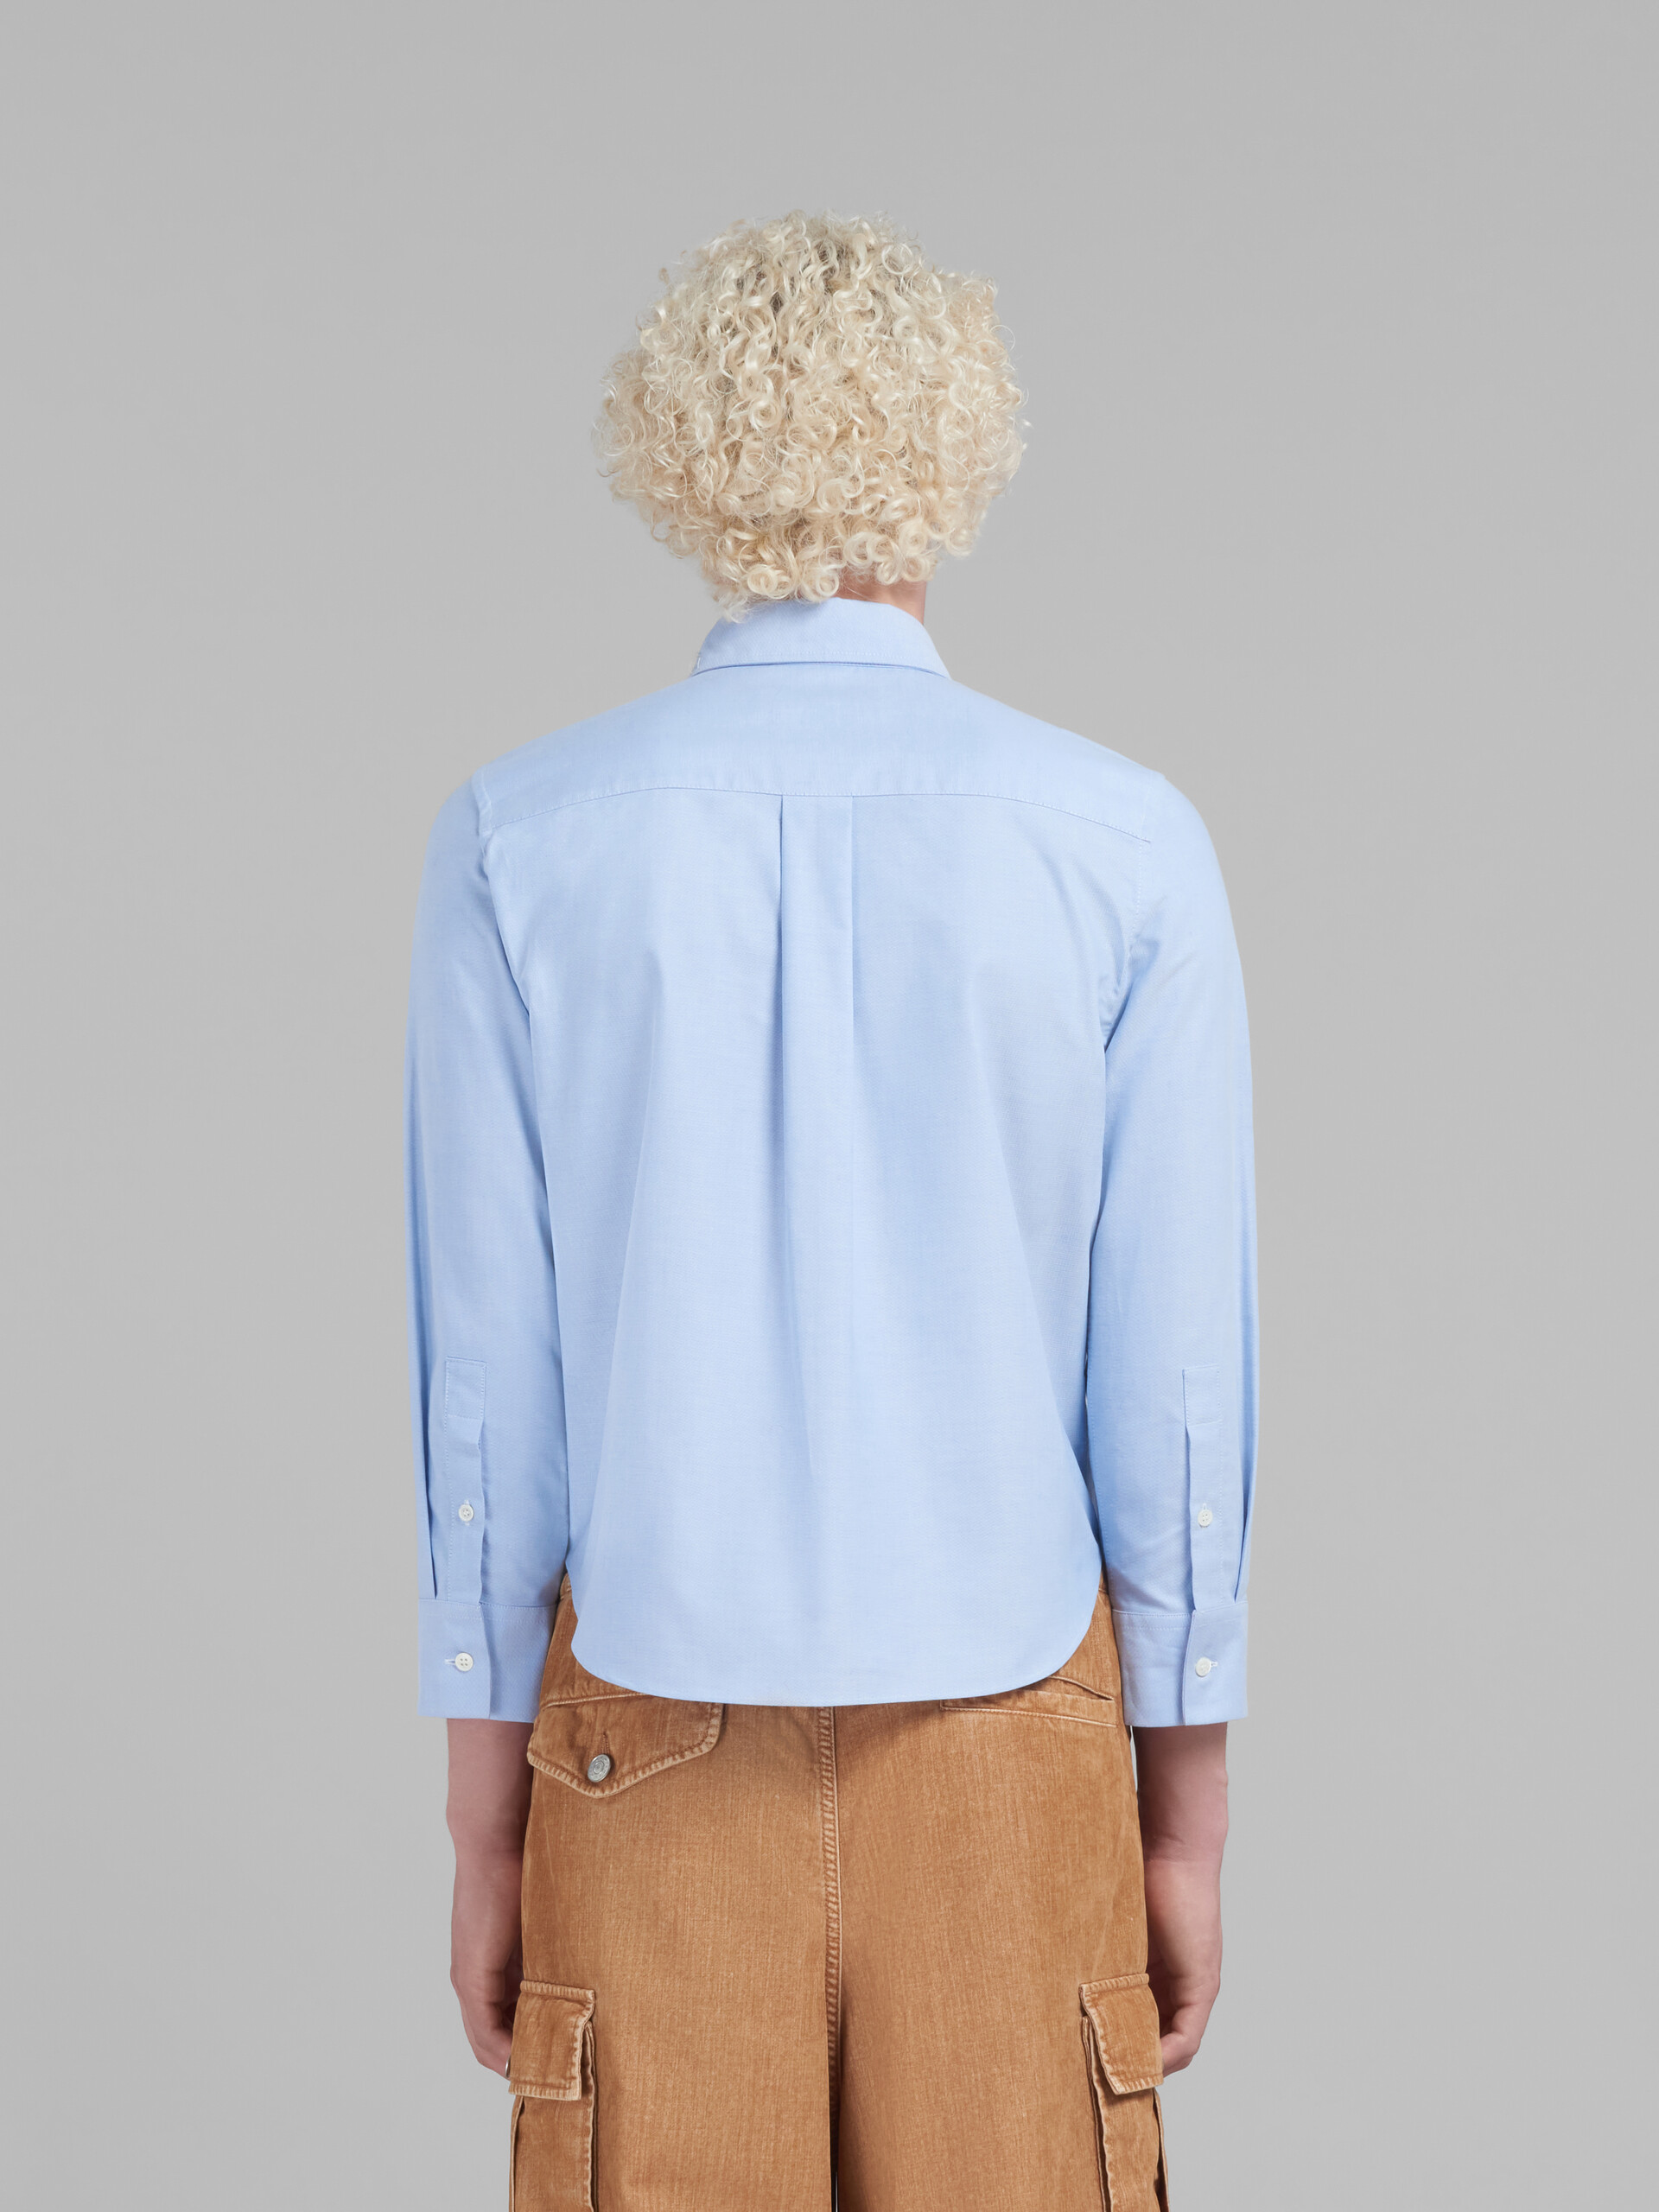 Camisa corta de oxford azul claro con efecto remiendo Marni - Camisas - Image 3